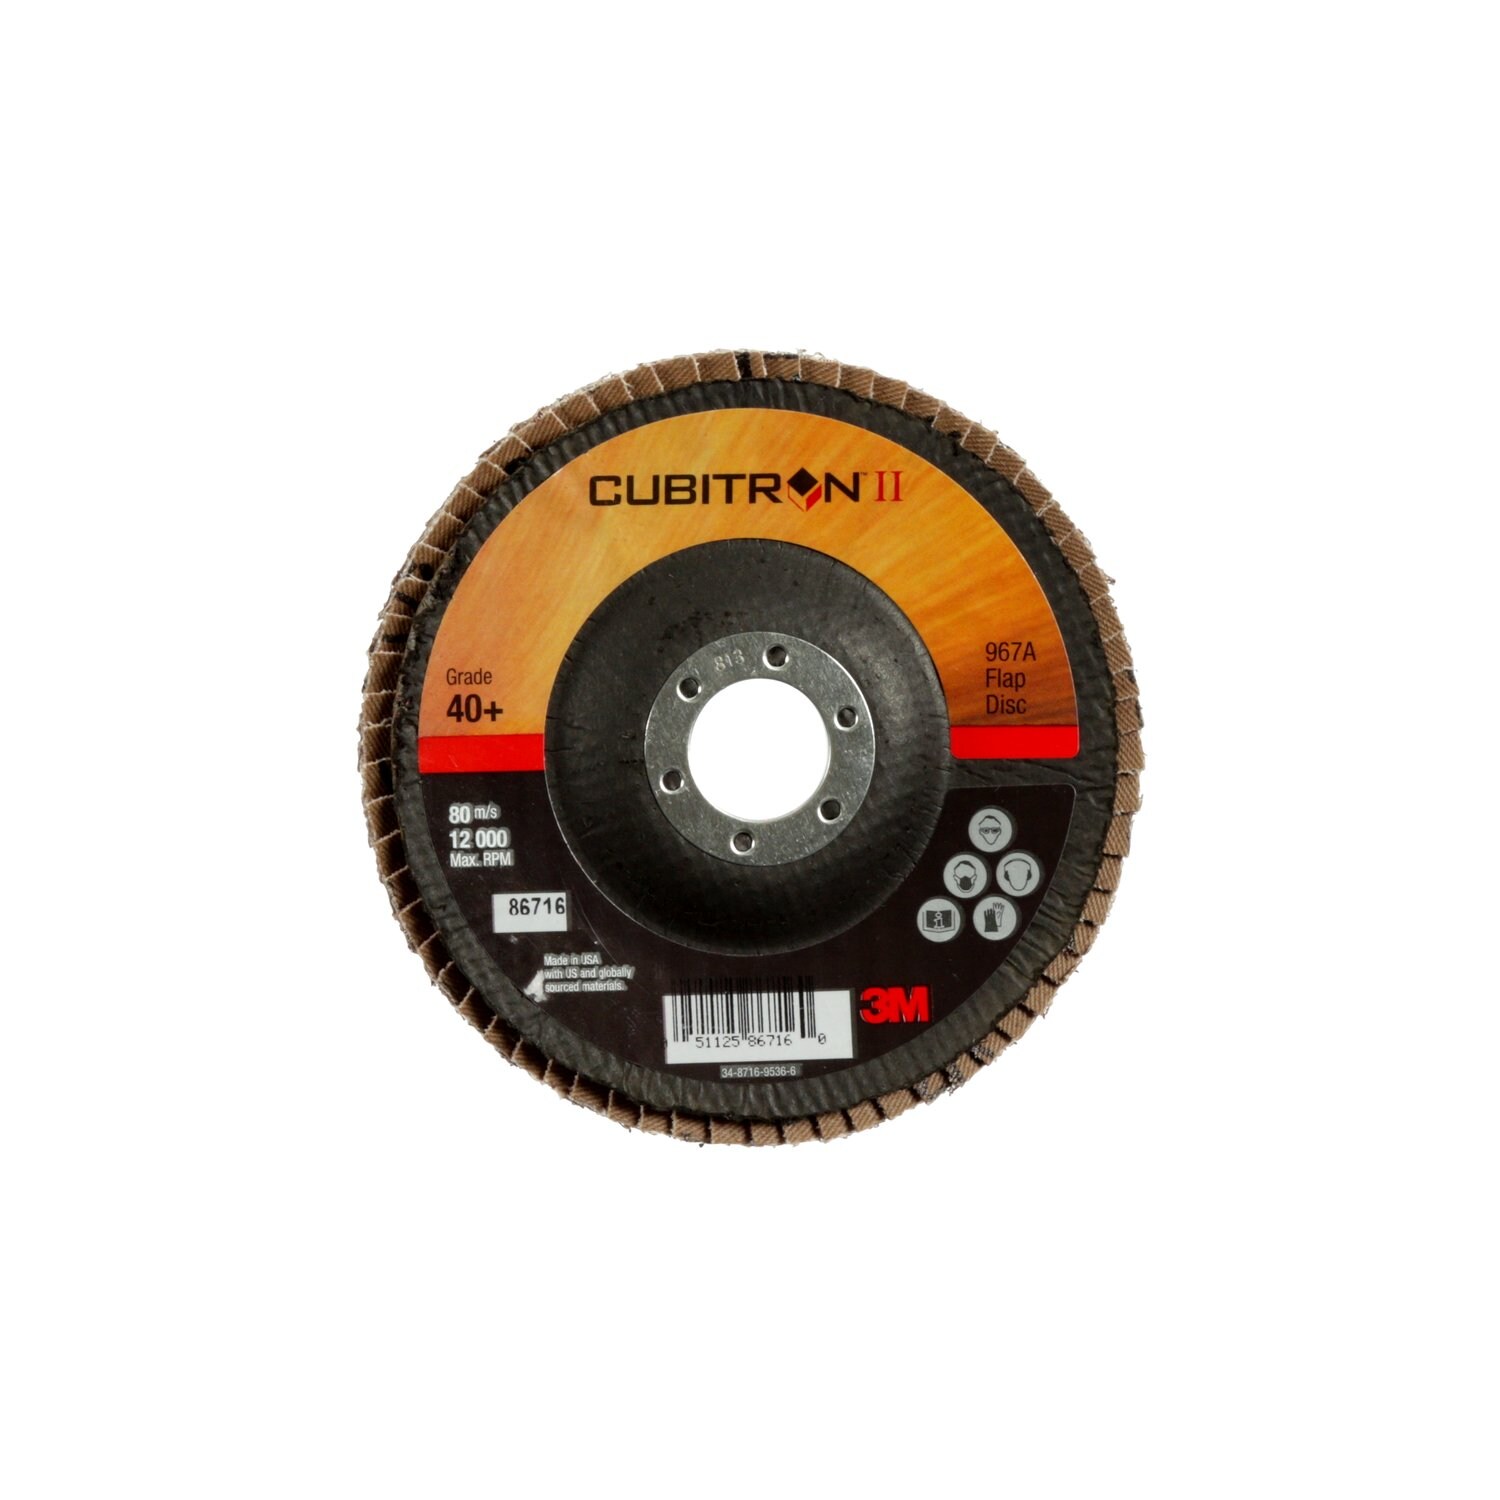 7000148197 - 3M Cubitron II Flap Disc 967A, 40+, T29, 5 in x 7/8 in, 10 ea/Case